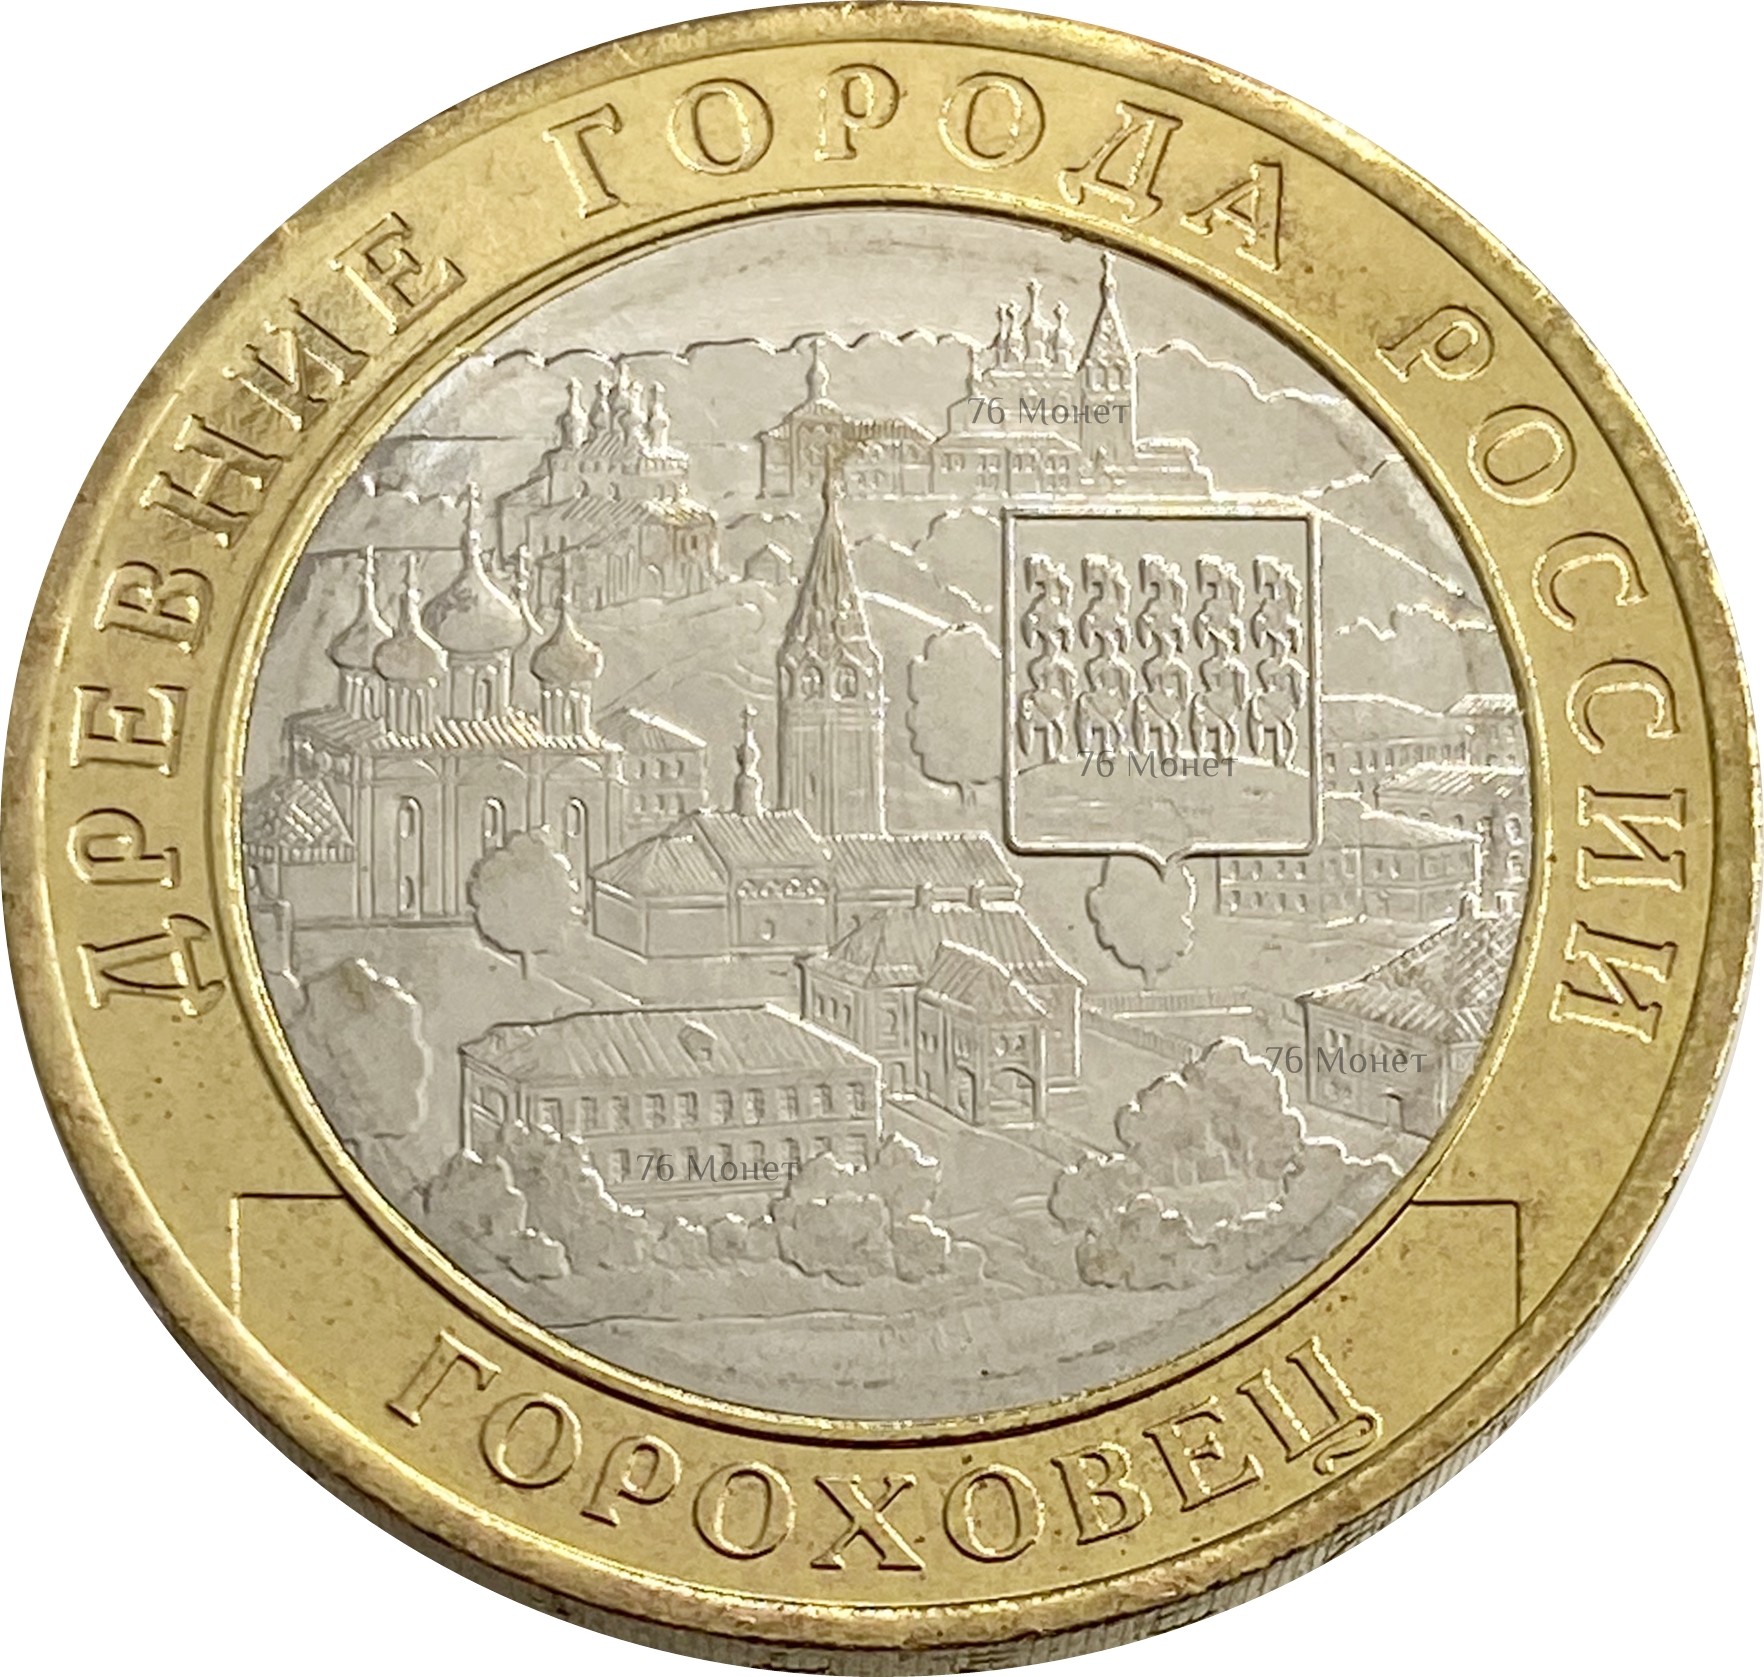 10 рублей «г. Гороховец, Владимирская область